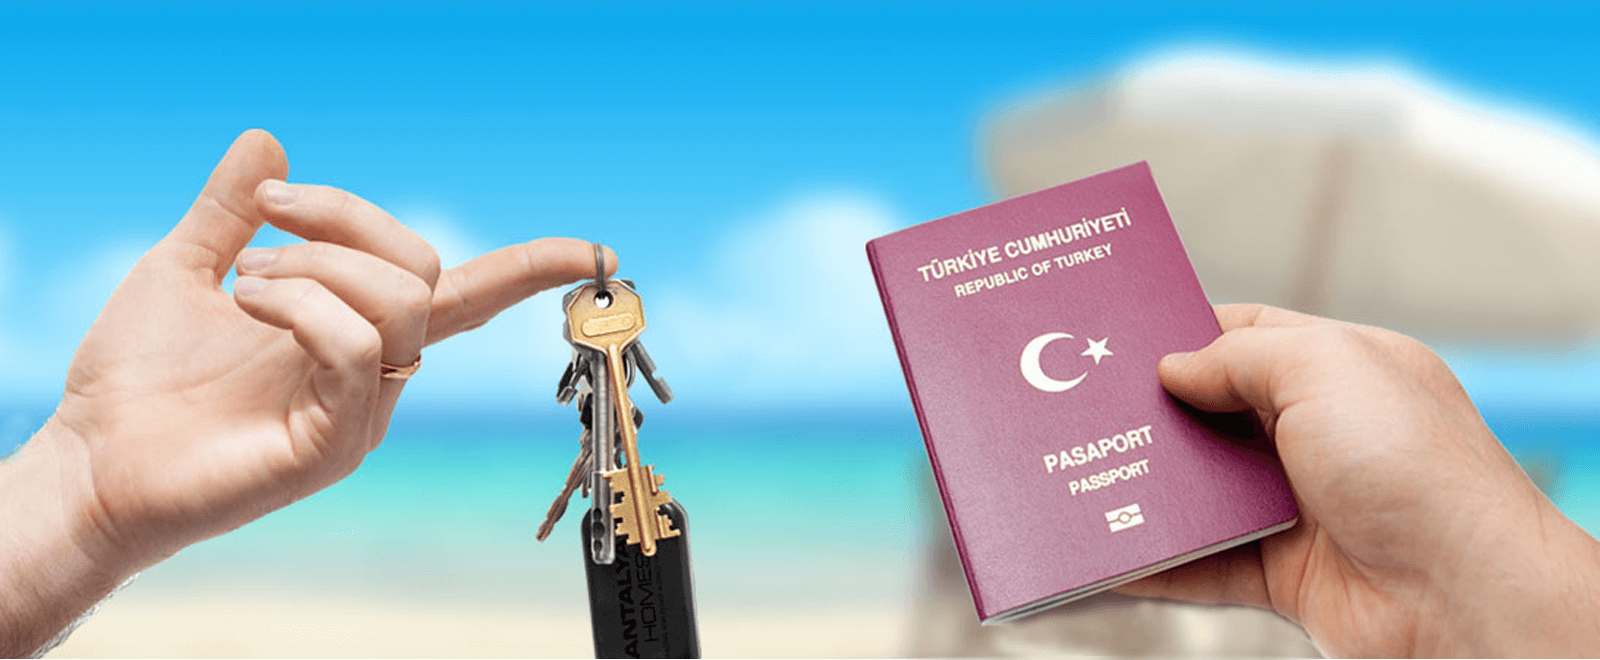 Obywatelstwo Tureckie poprzez Inwestycję